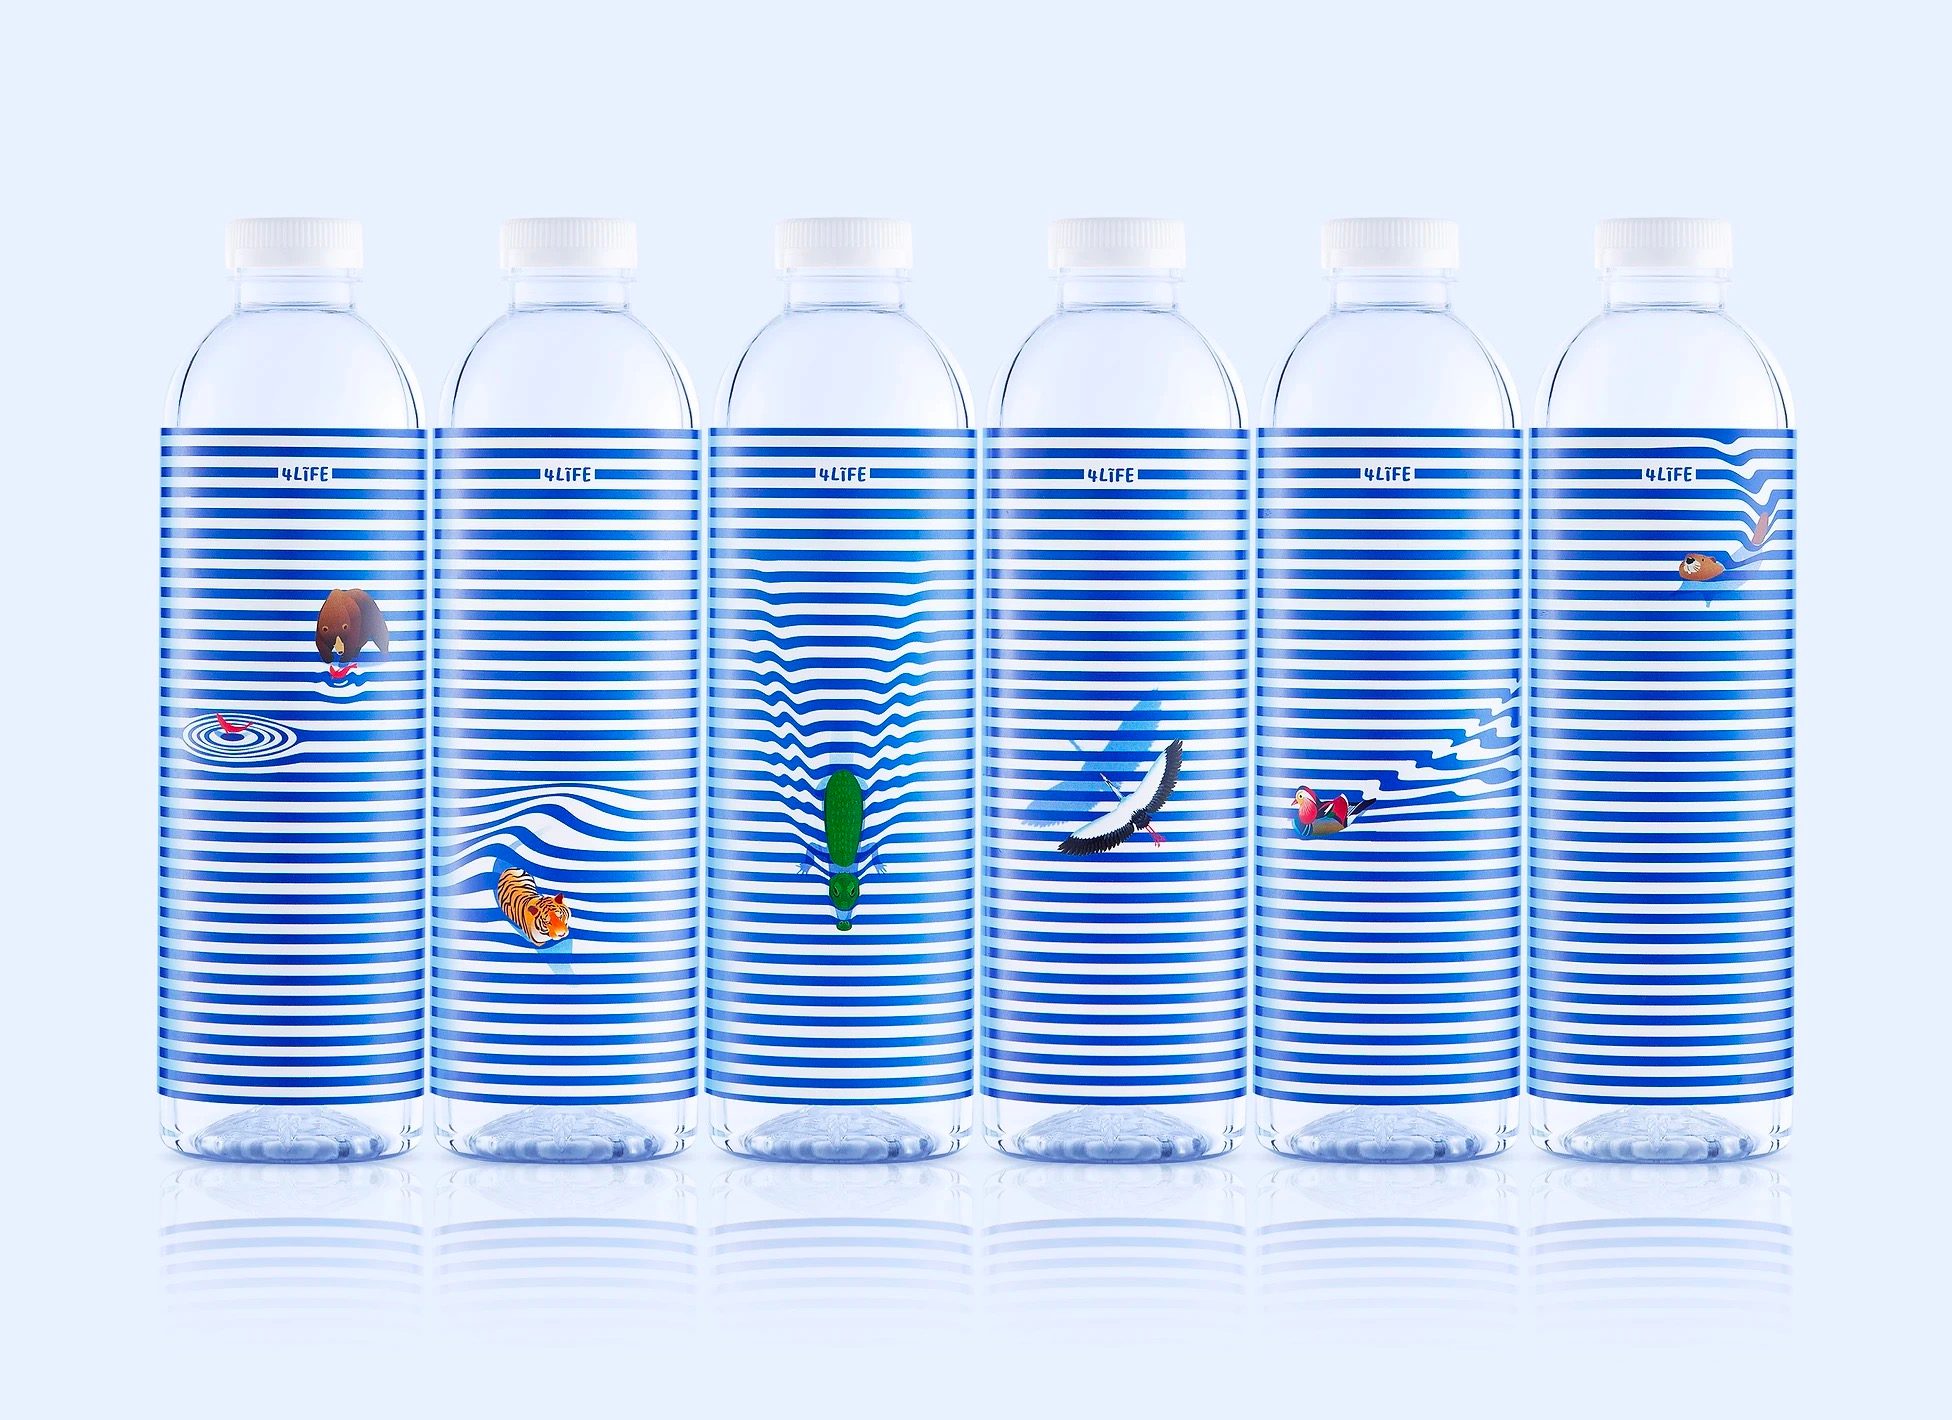 蓝白线条和动物插画打造精美矿泉水包装